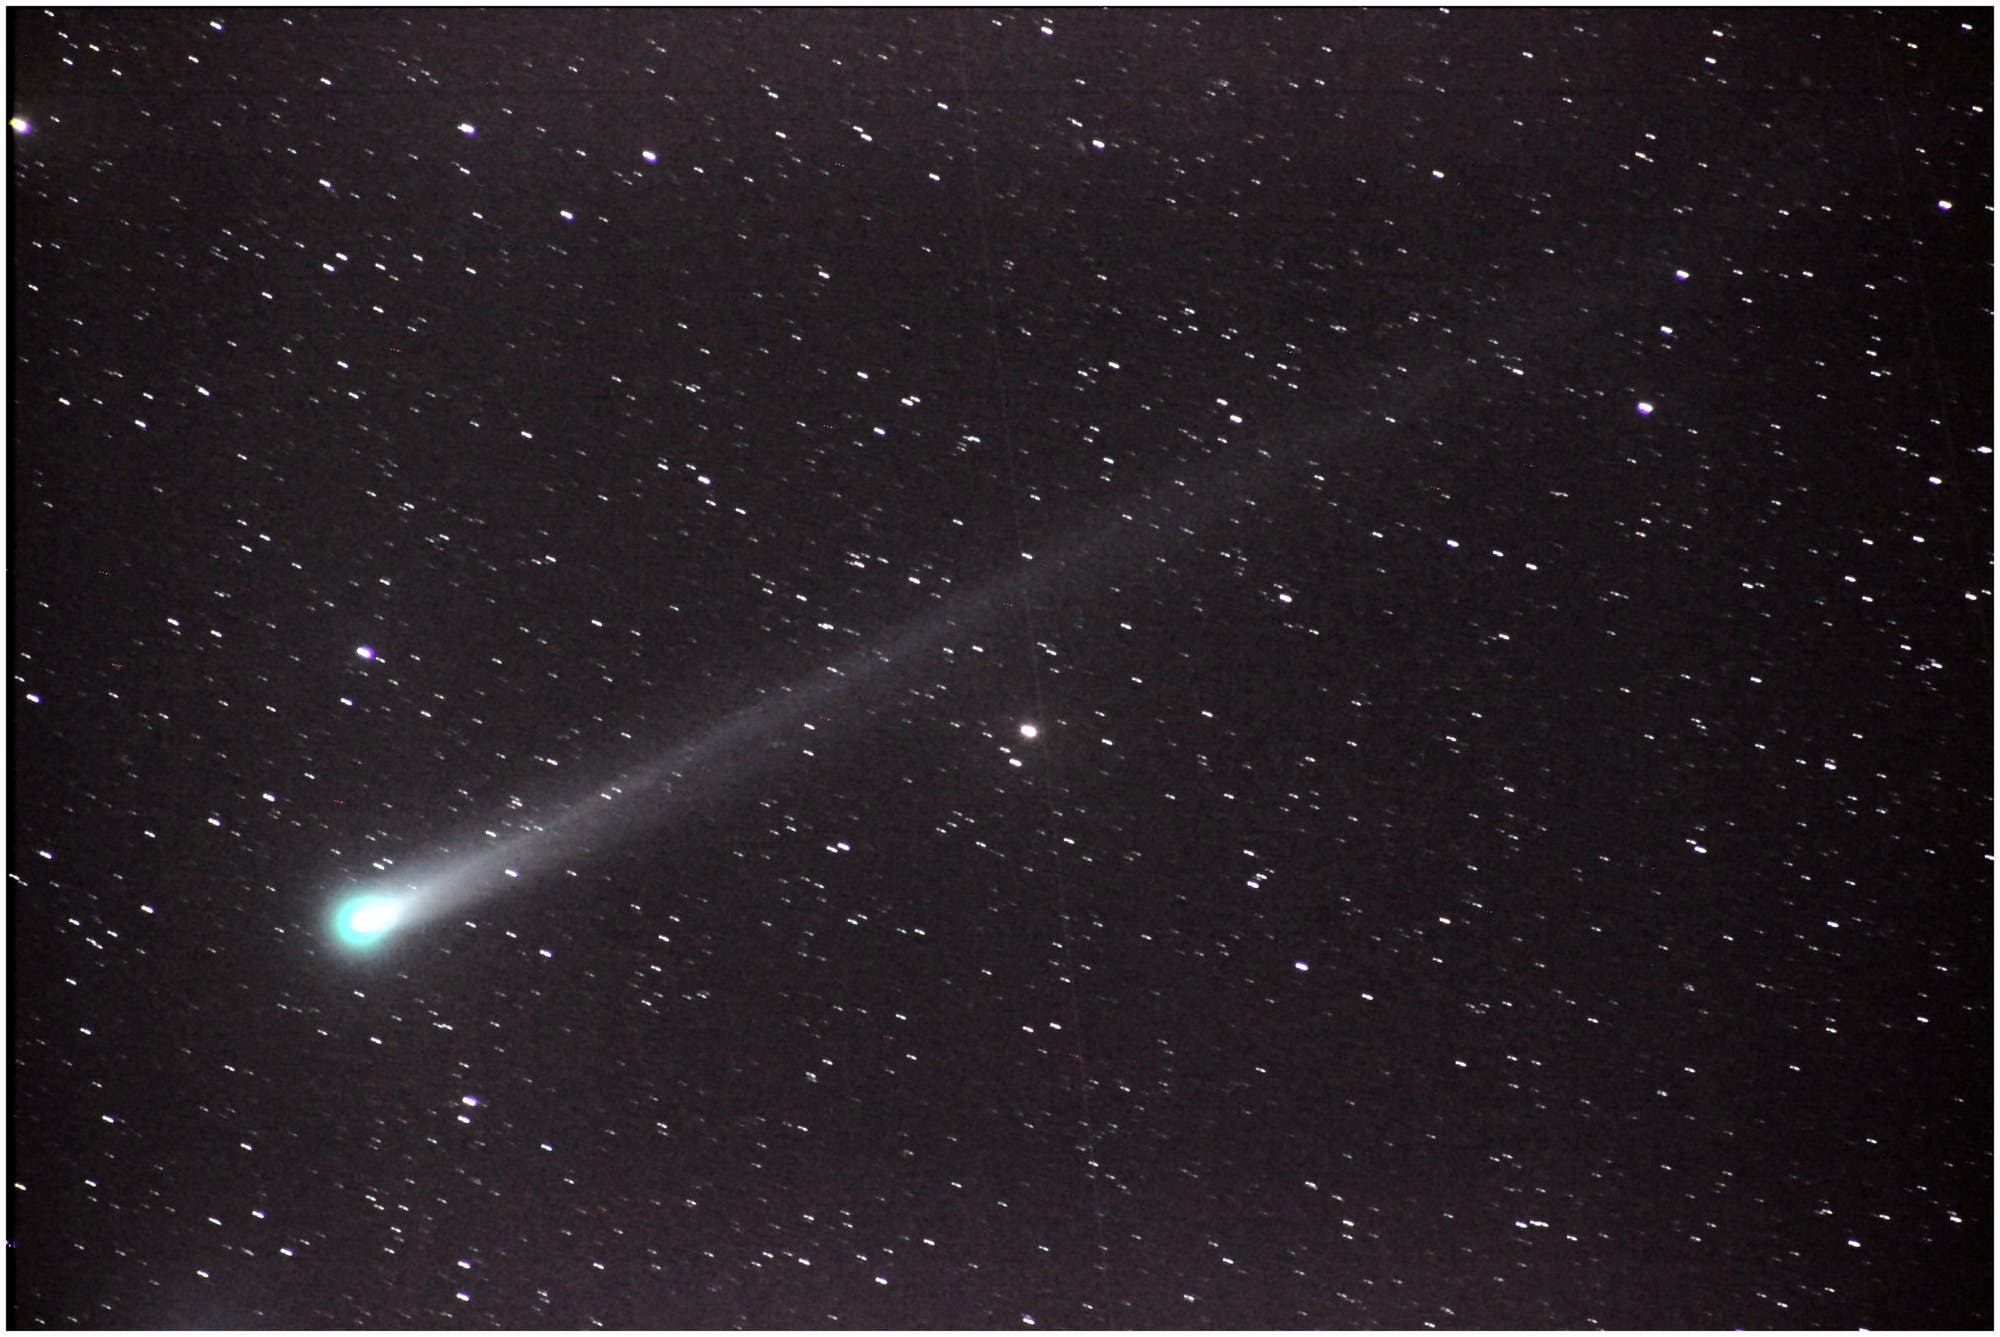 Komet C/2013 R1 (Lovejoy) am 4. Dezember 2013